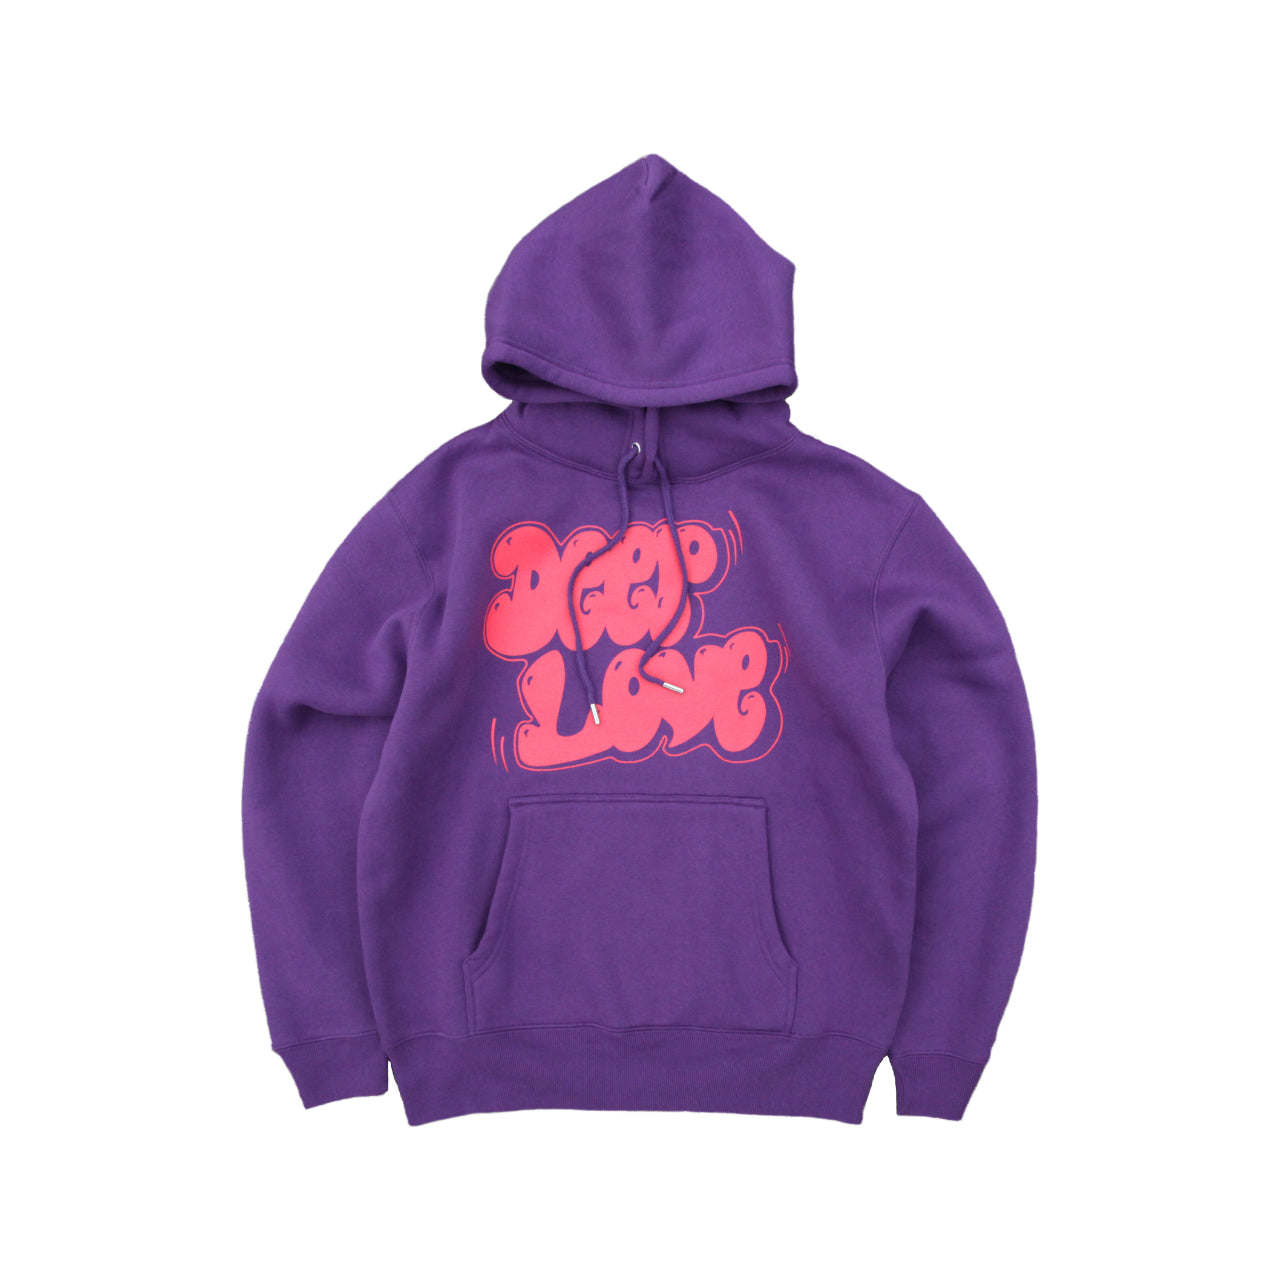 deep love hoodie in purple